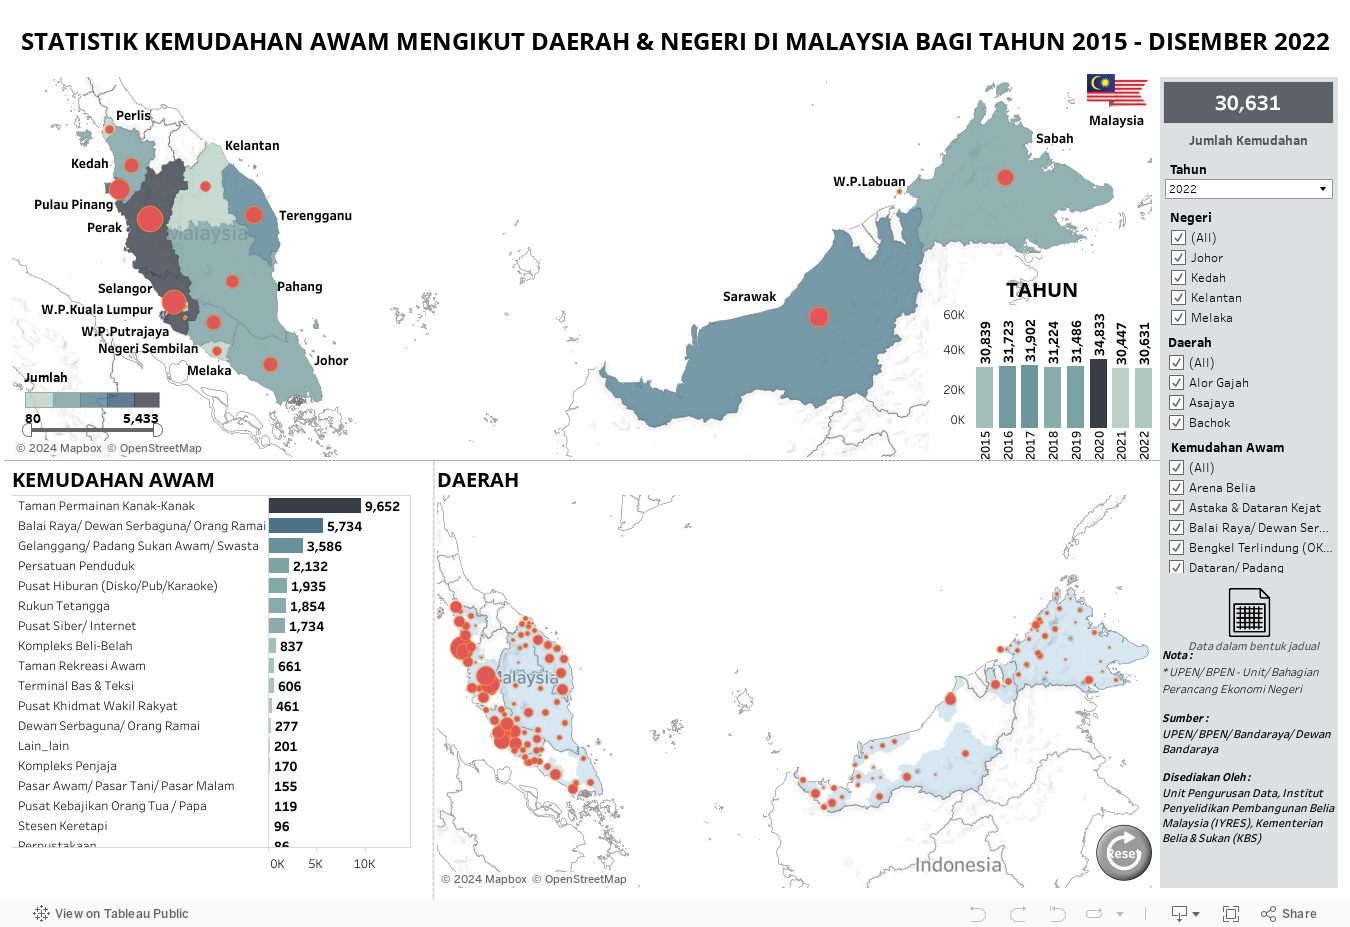 STATISTIK KEMUDAHAN AWAM MENGIKUT DAERAH & NEGERI DI MALAYSIA BAGI TAHUN 2015 - DISEMBER 2022 